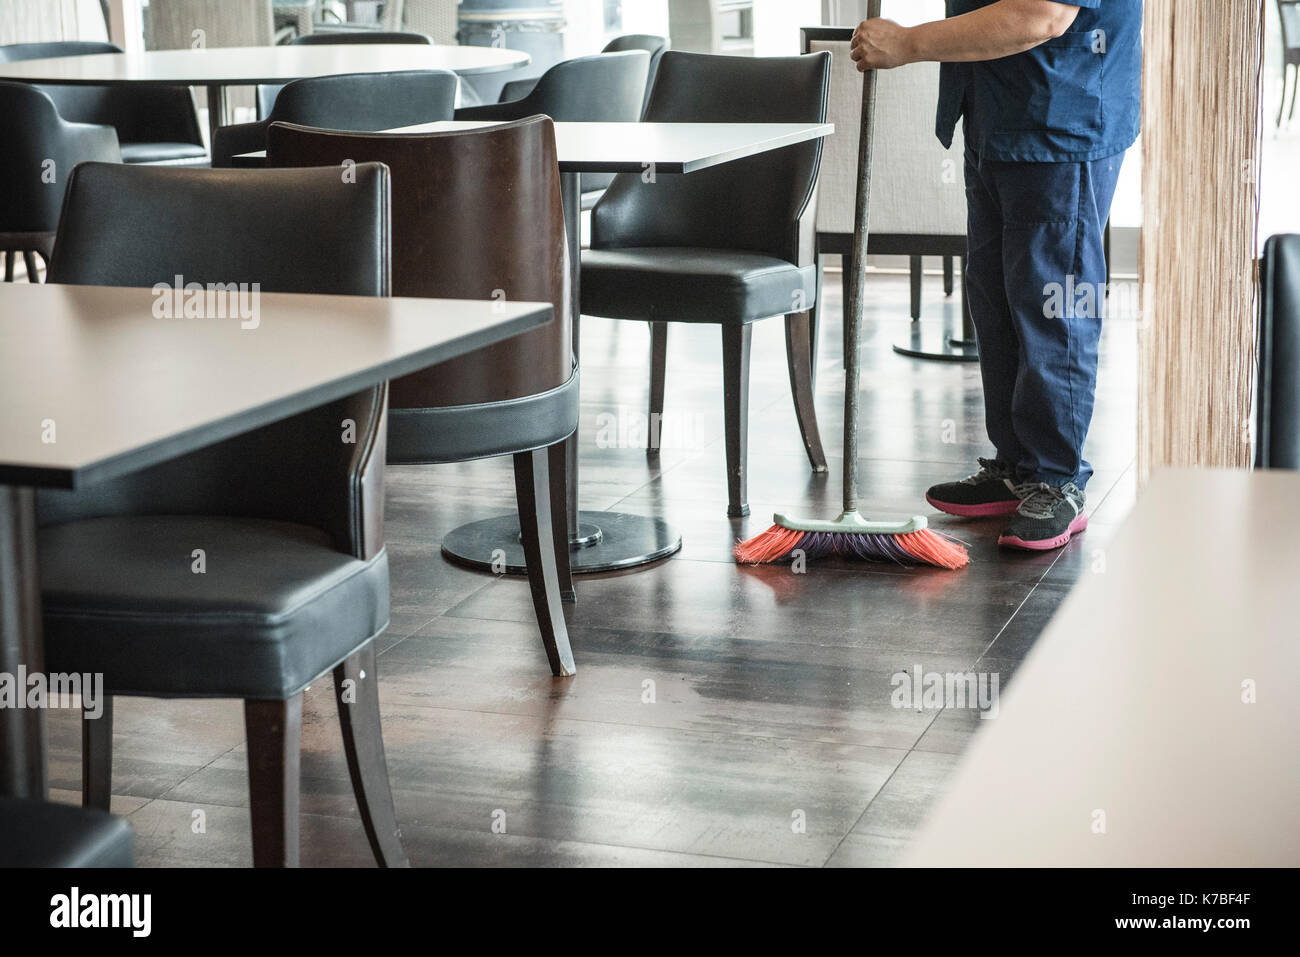 Man sweeping restaurant floor Stock Photo